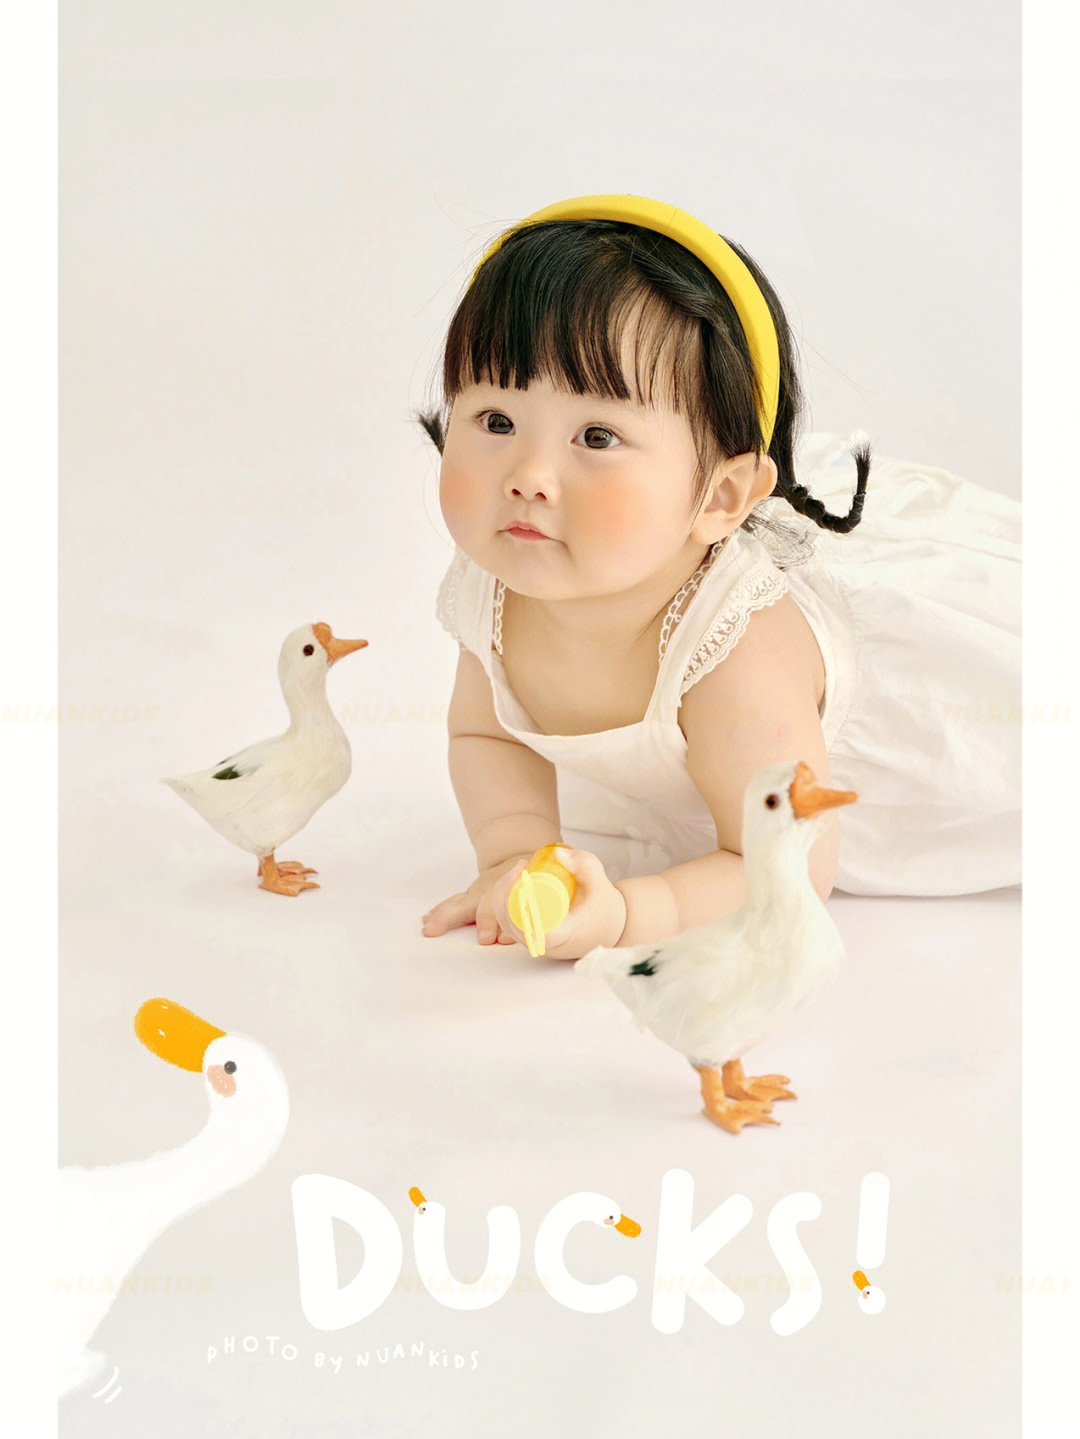 超级萌的小鸭子主题上新啦温州周岁照